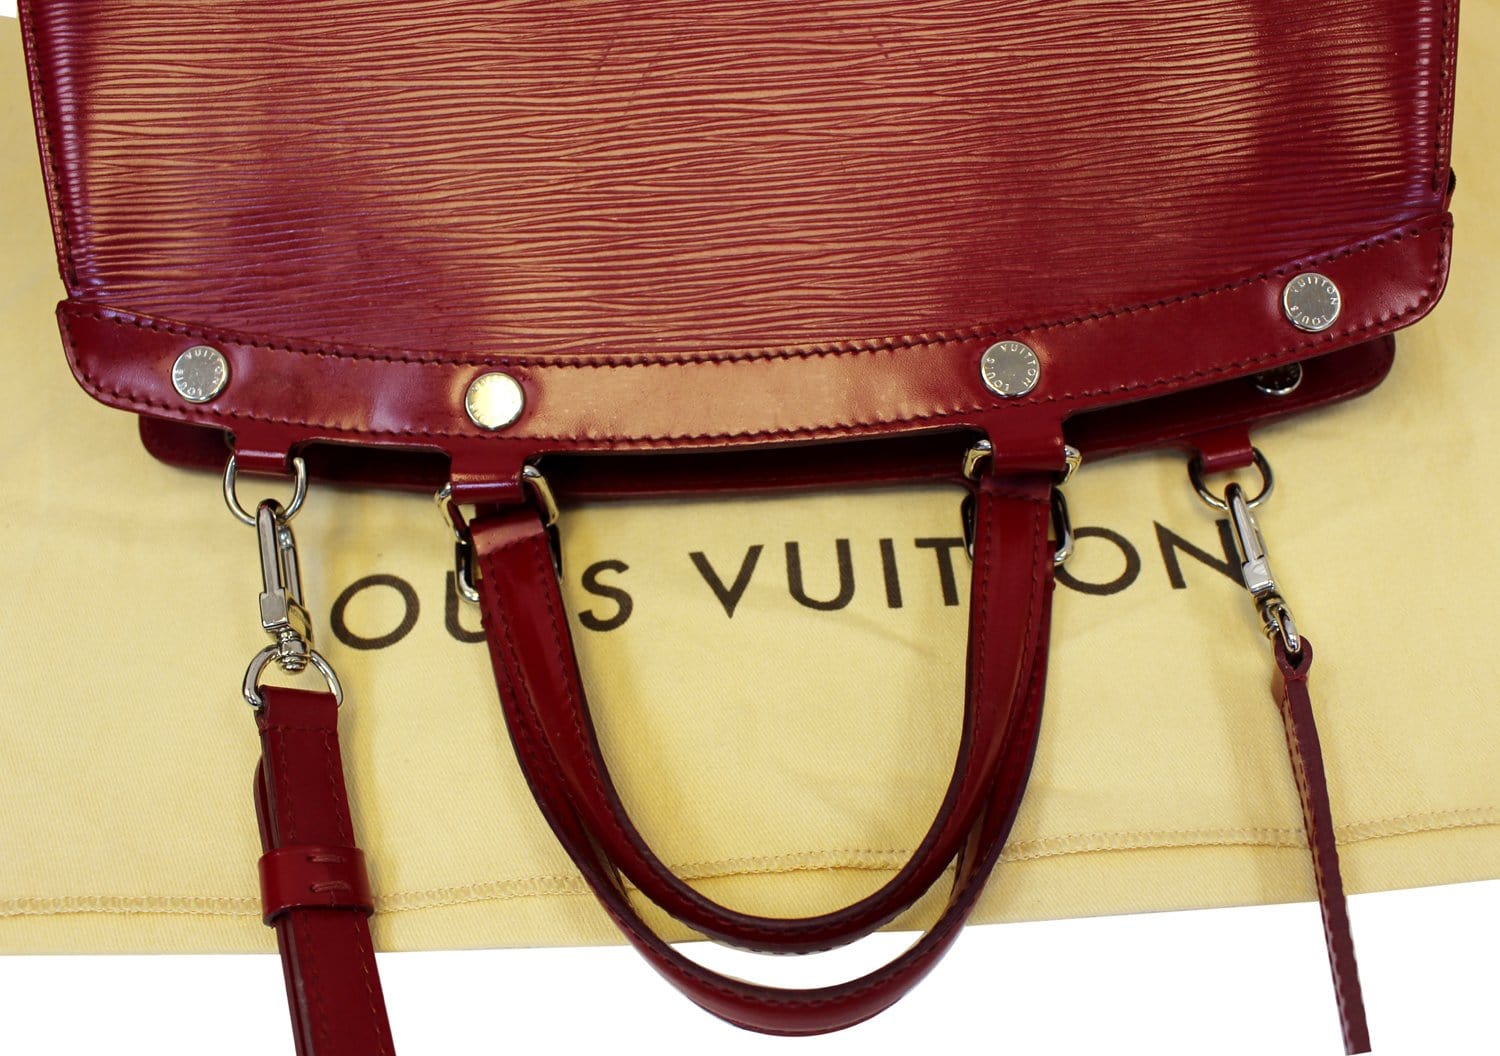 Louis Vuitton Carmine Epi Leather Brea MM bag